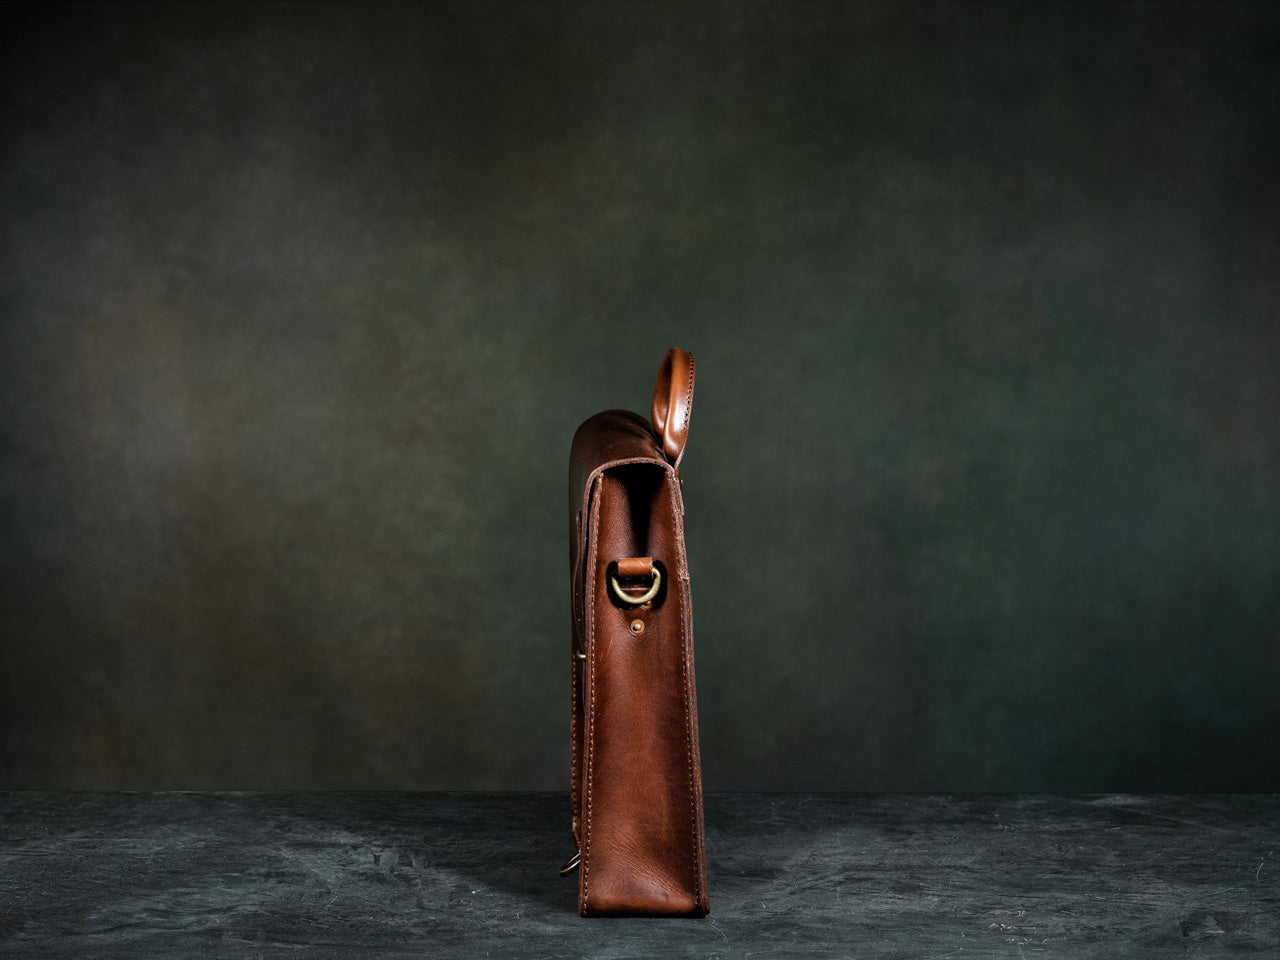 Brown Leather Bag for iPad - Satchel & Page Messenger Bag Satchel